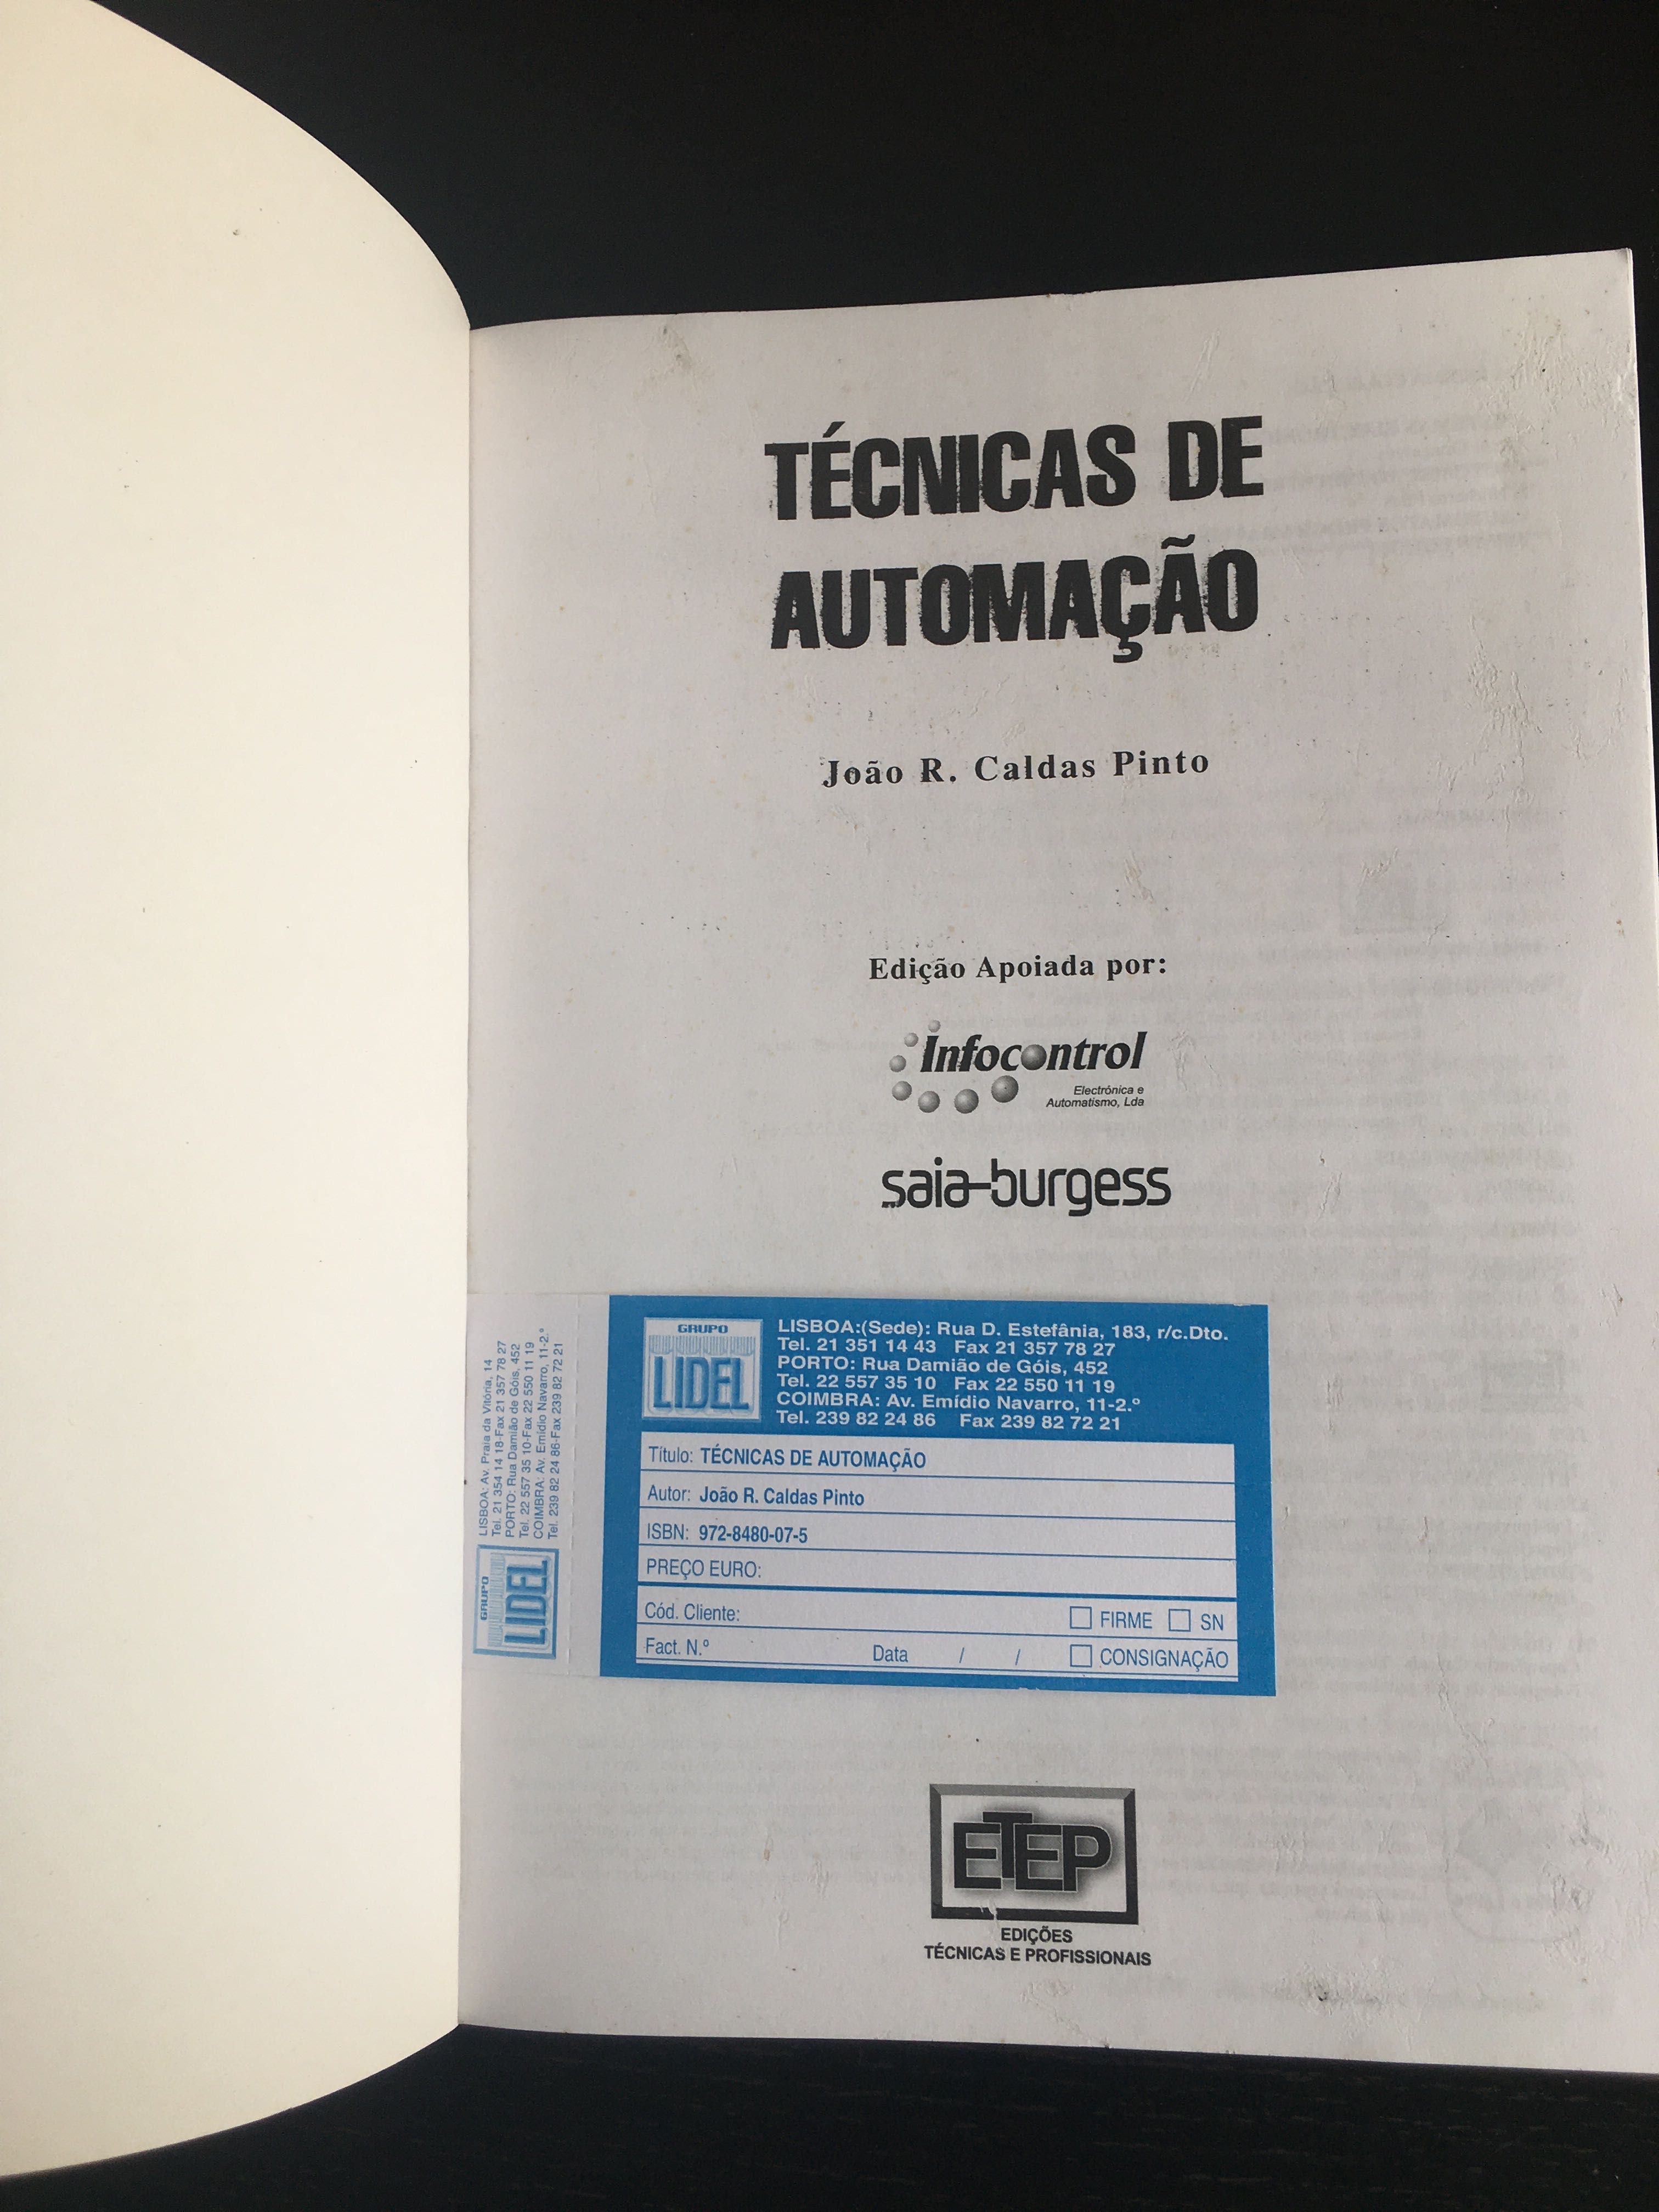 Técnicas de automação, J. R. Caldas Pinto